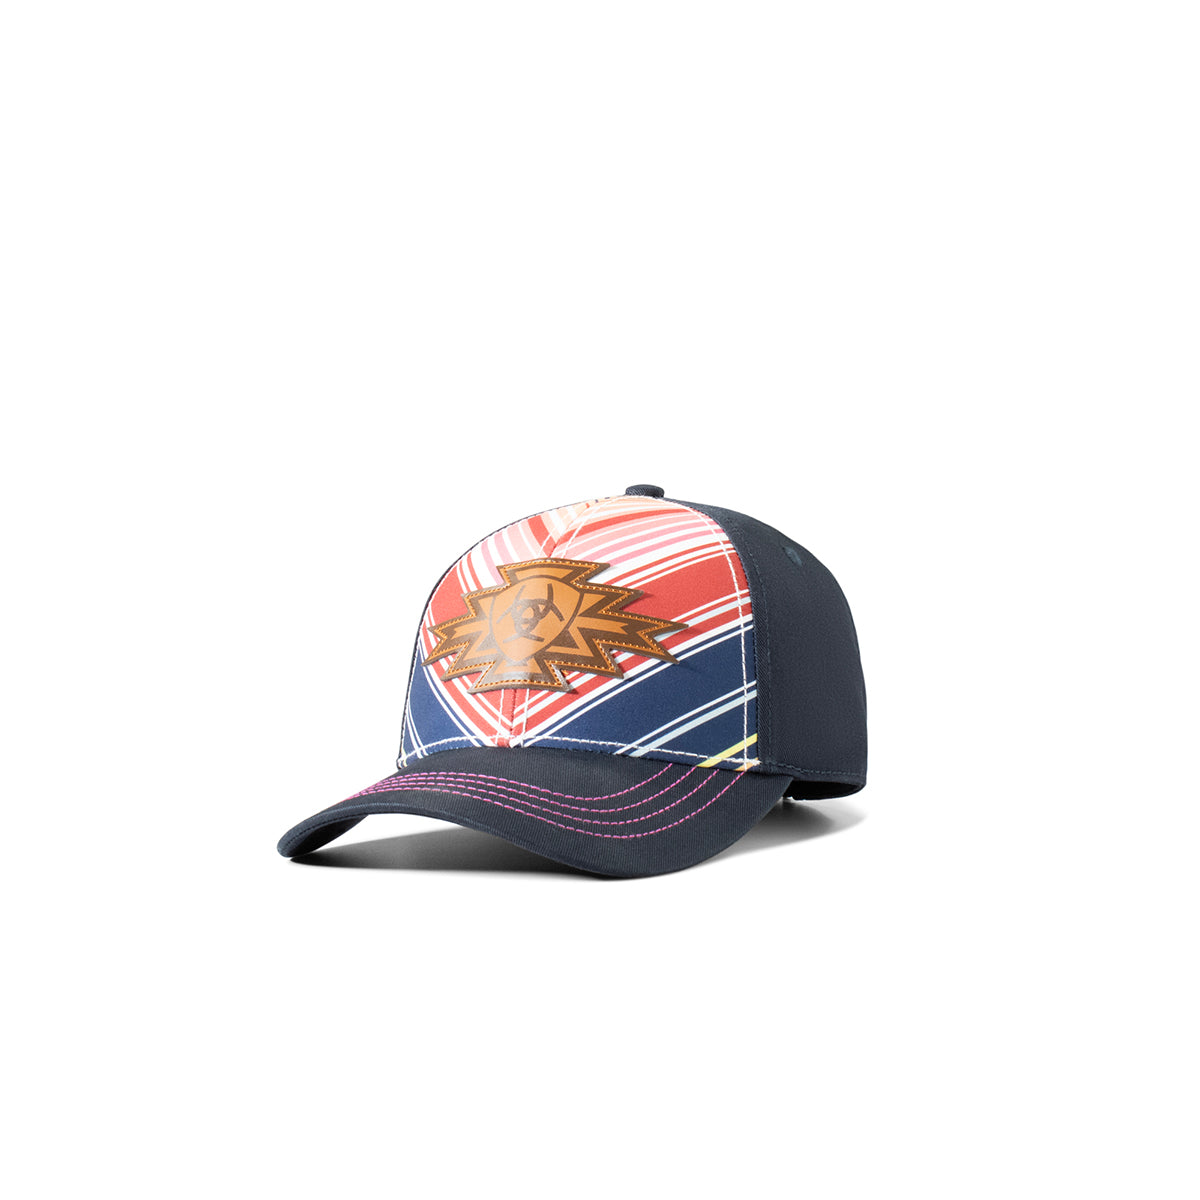 Ariat Women's Southwest Patch Snapback Cap - Multi-Color Serape/Navy